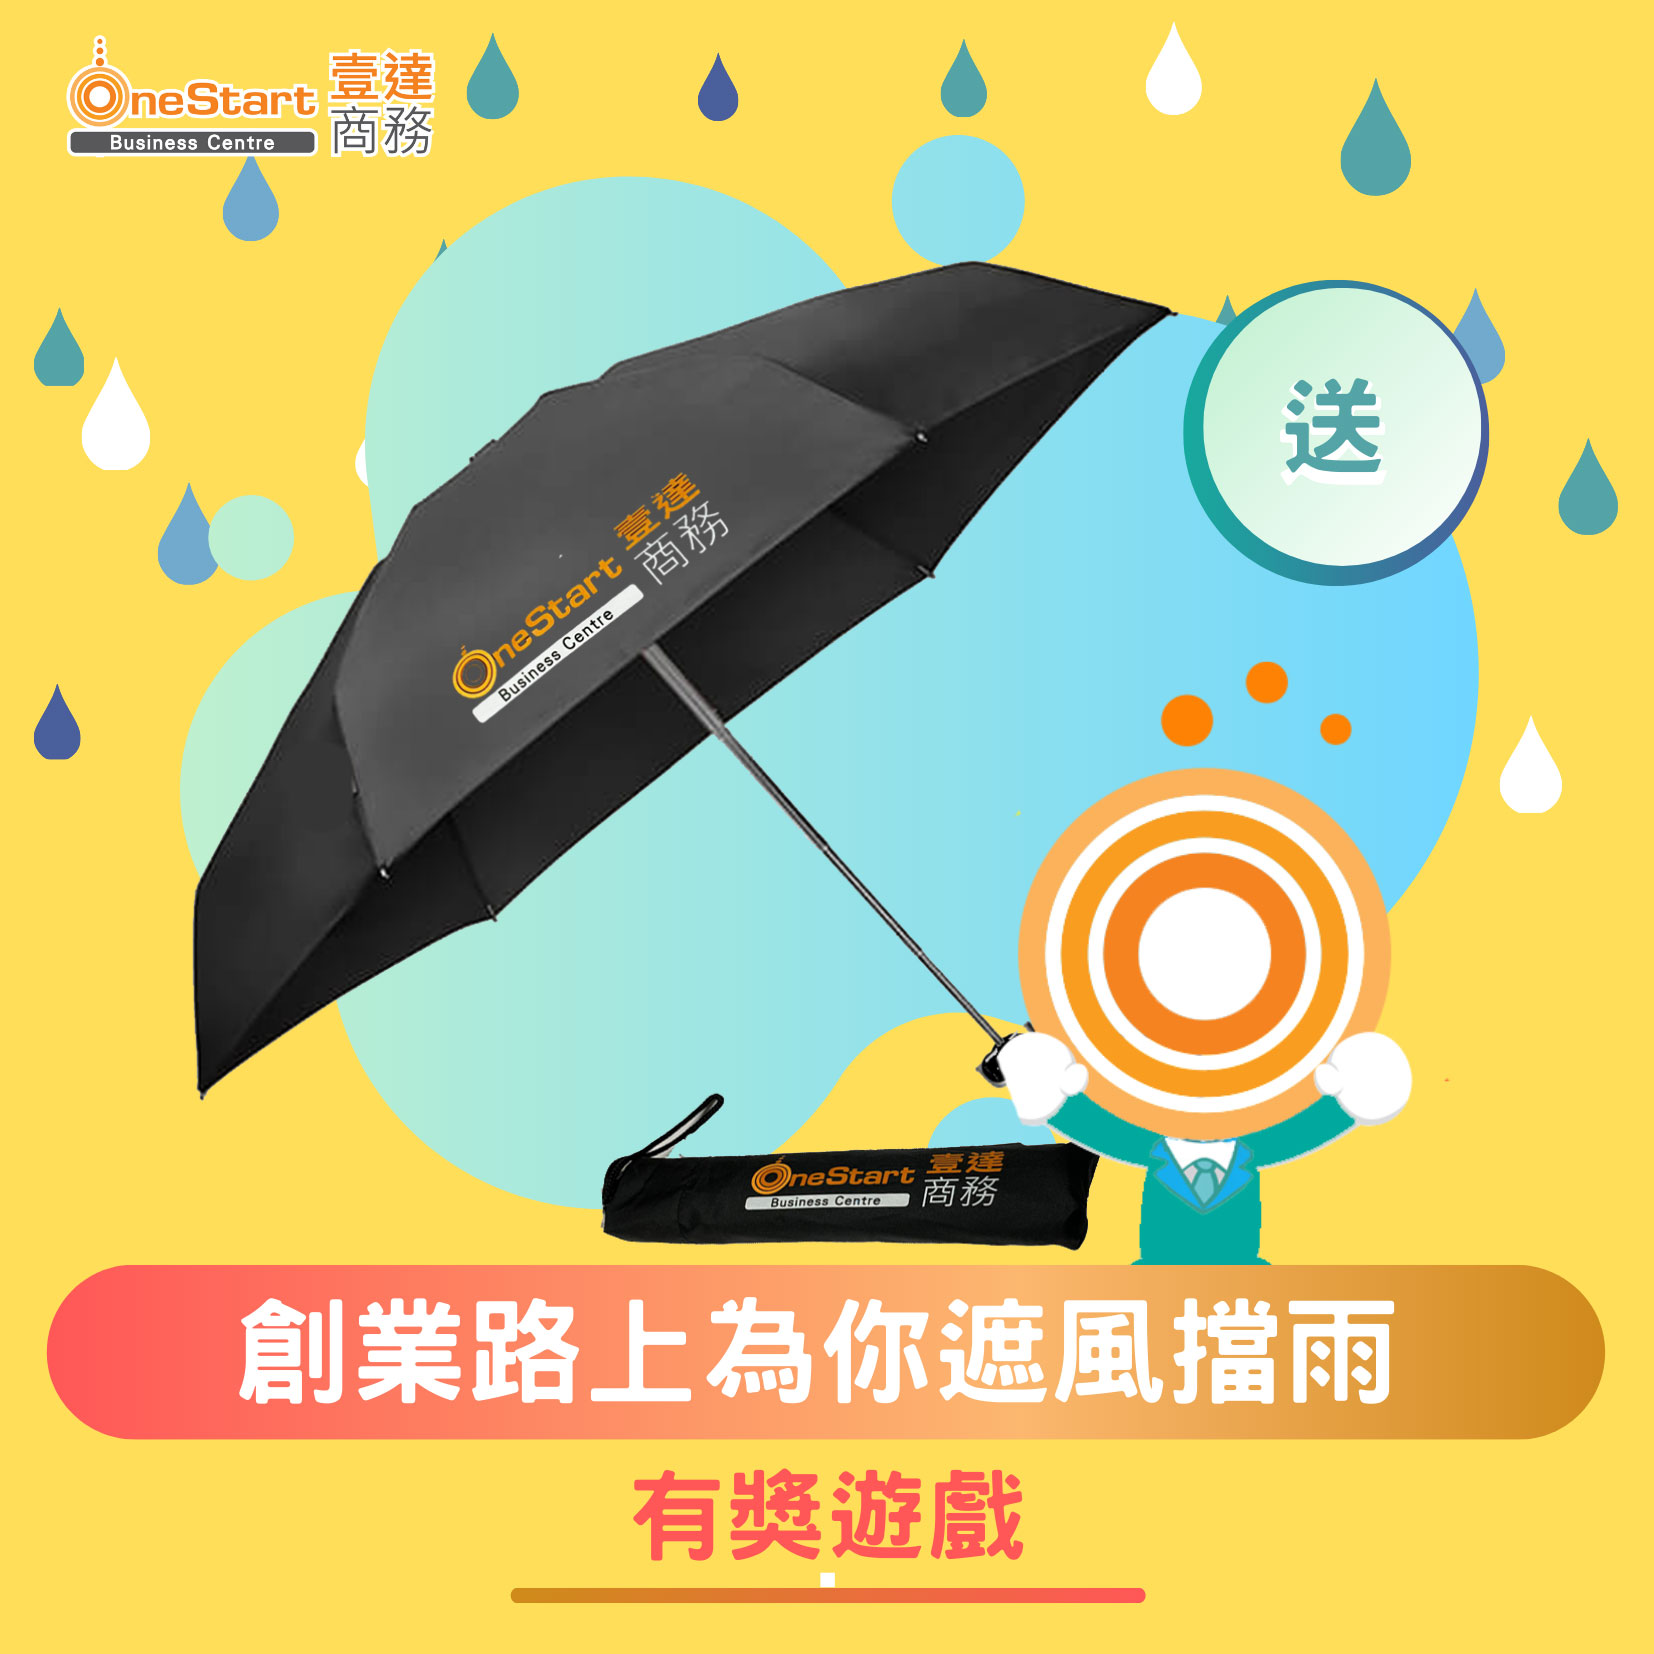 OneStart 在創業路上為你遮風擋雨 -有獎遊戲